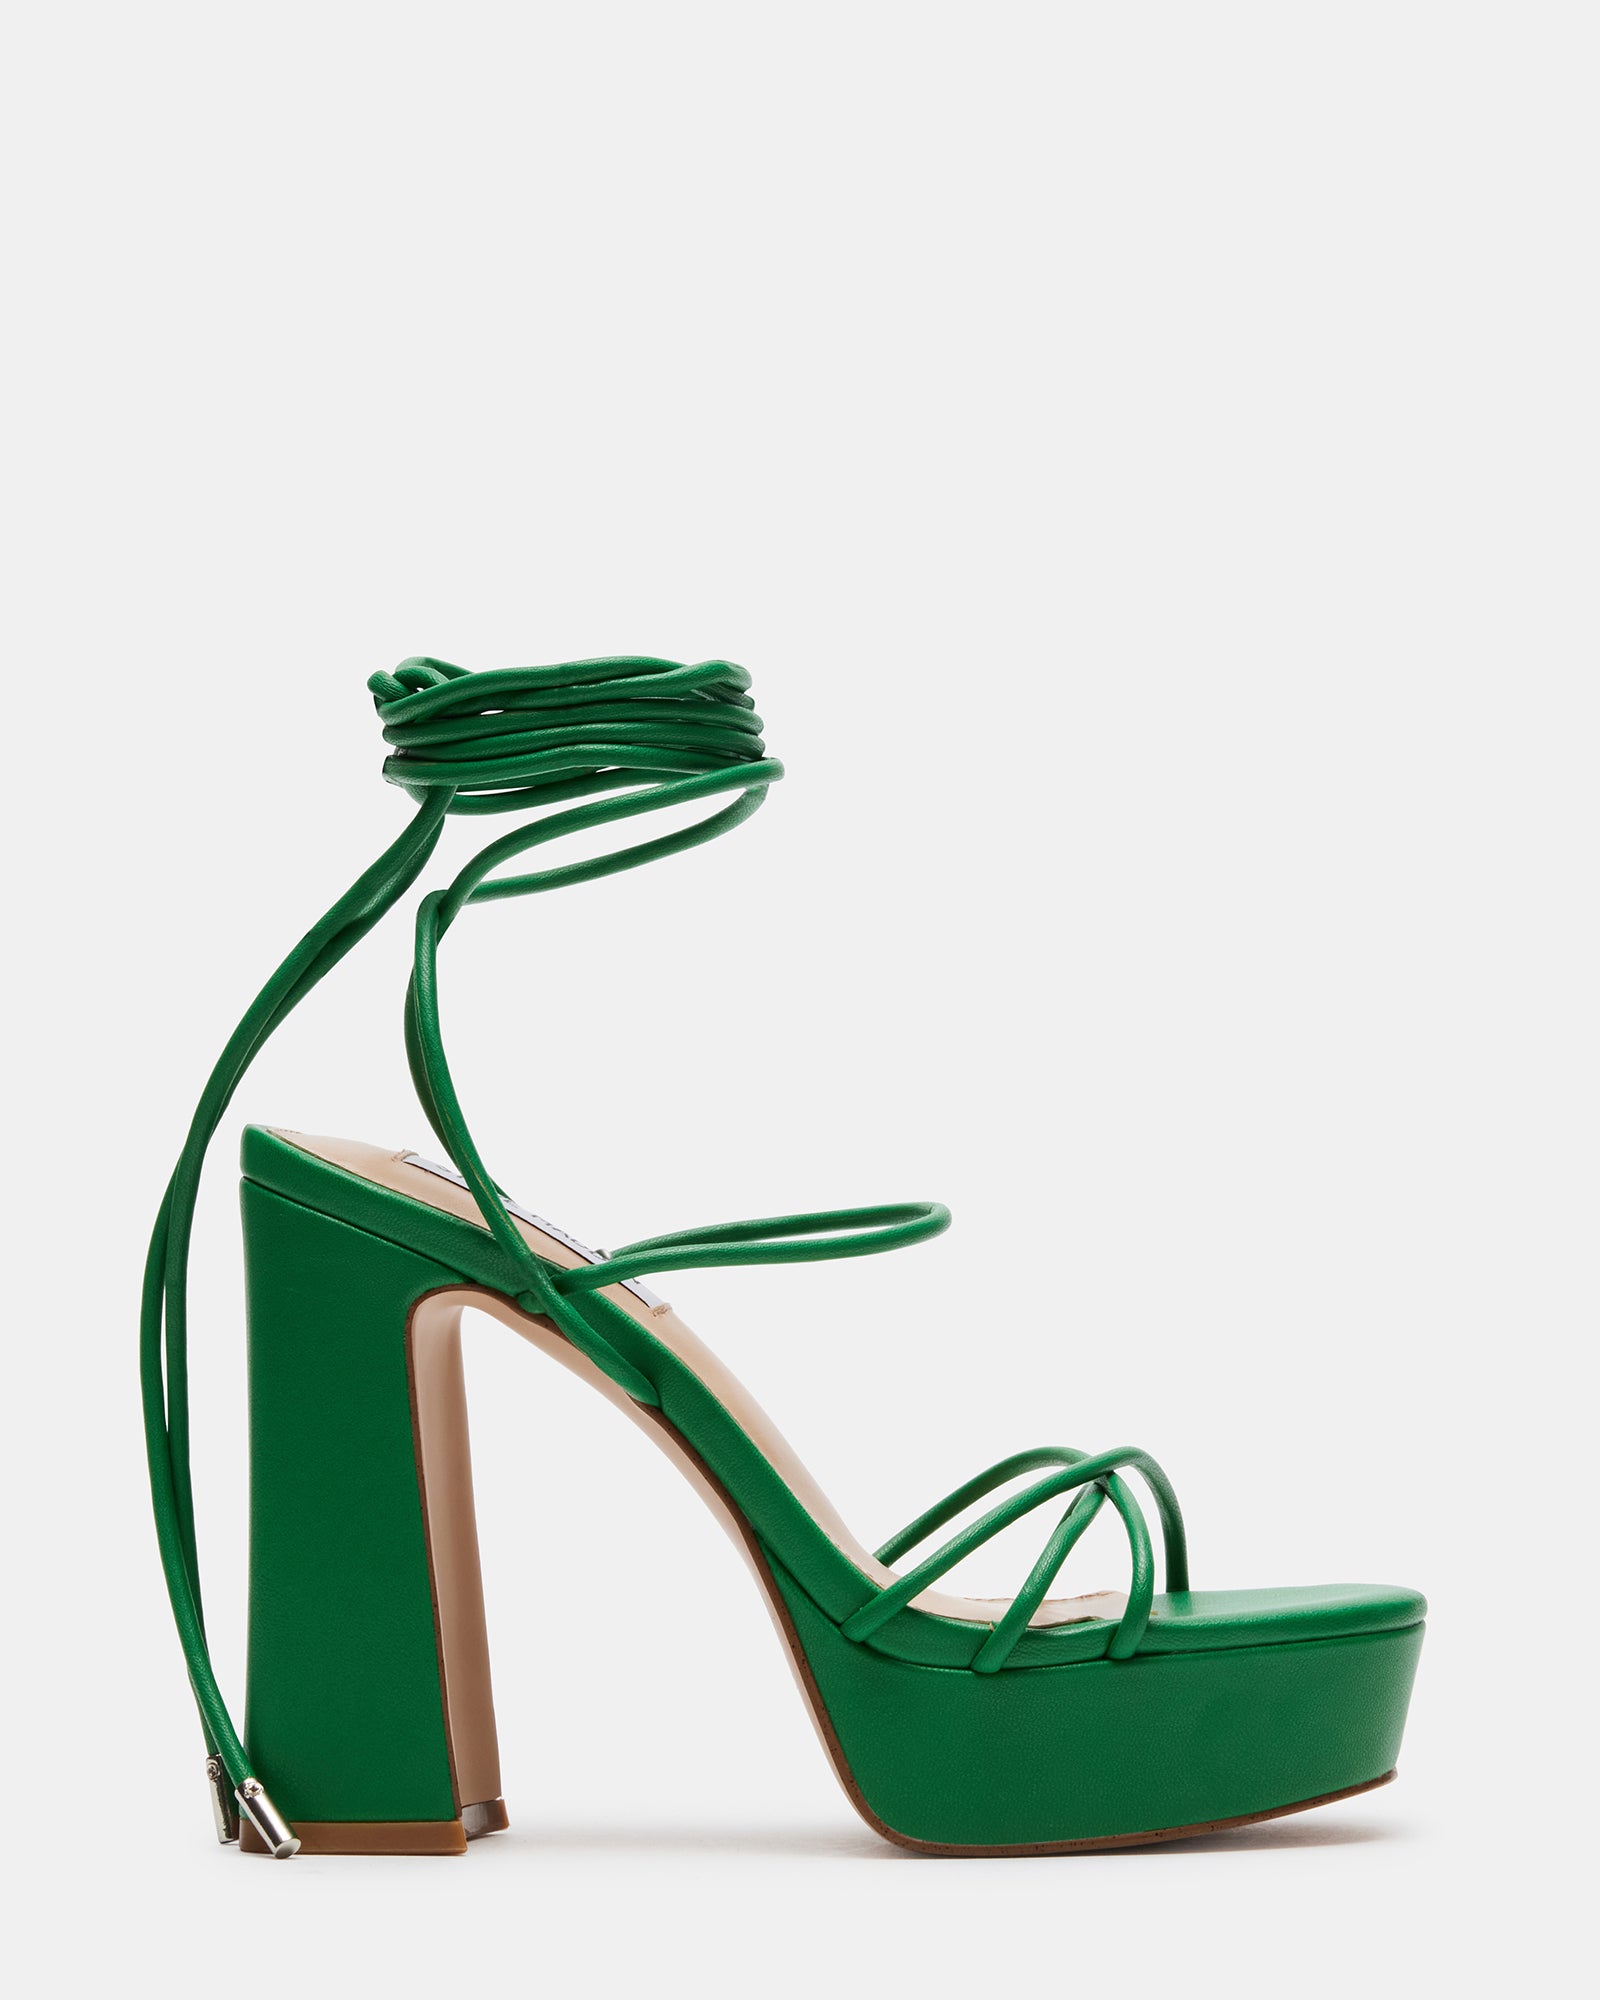 TALLULAH Green Lace Up Platform Heel | Women's Heels – Steve Madden